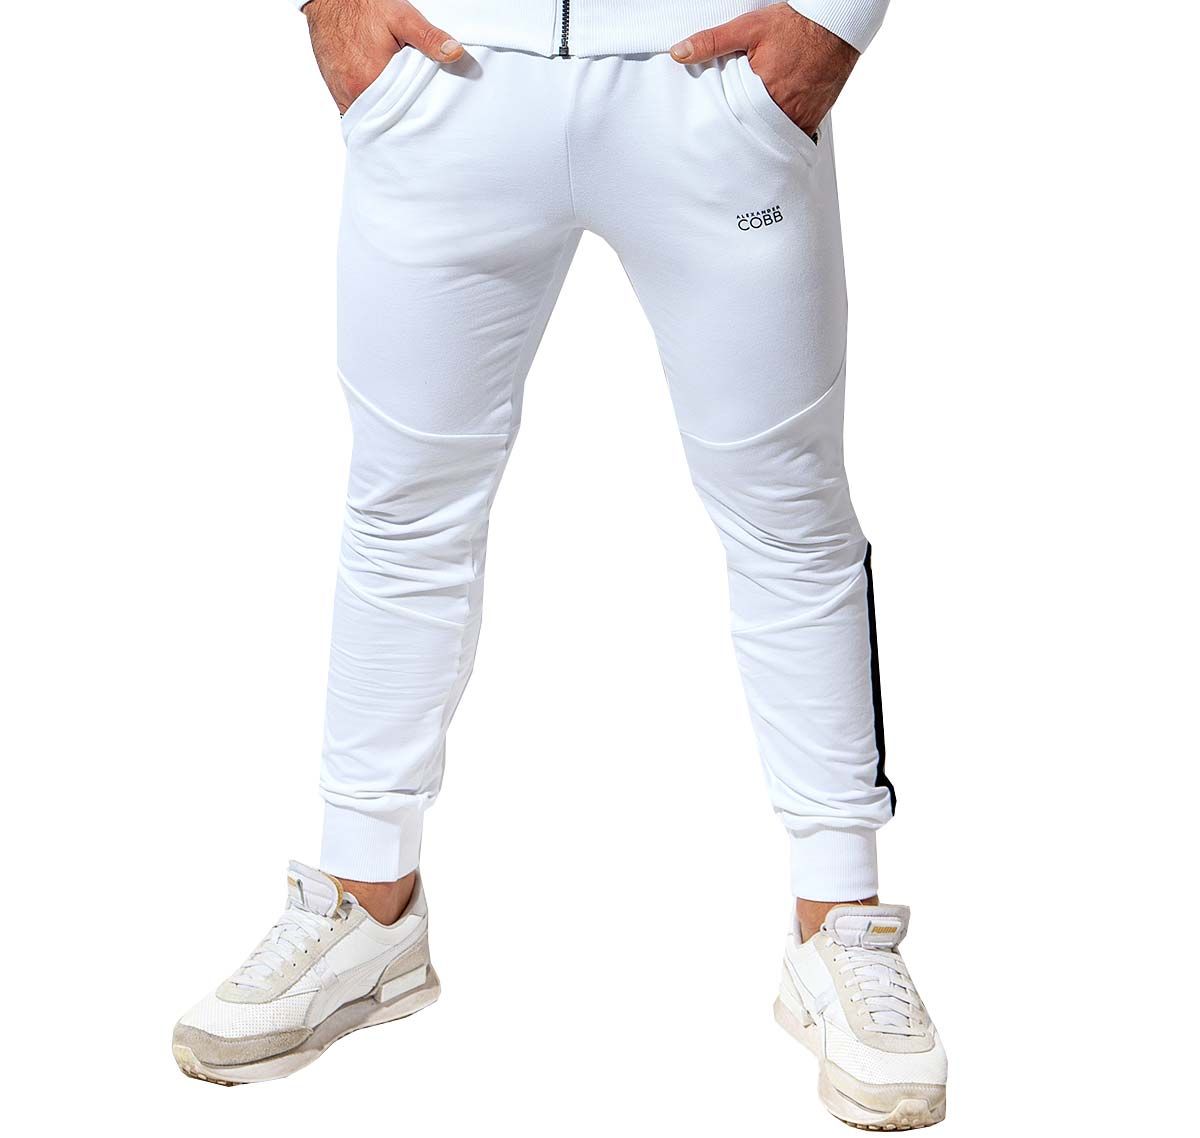 Alexander COBB Pantalón deportivo PANTS WHITE BLACK, blanco